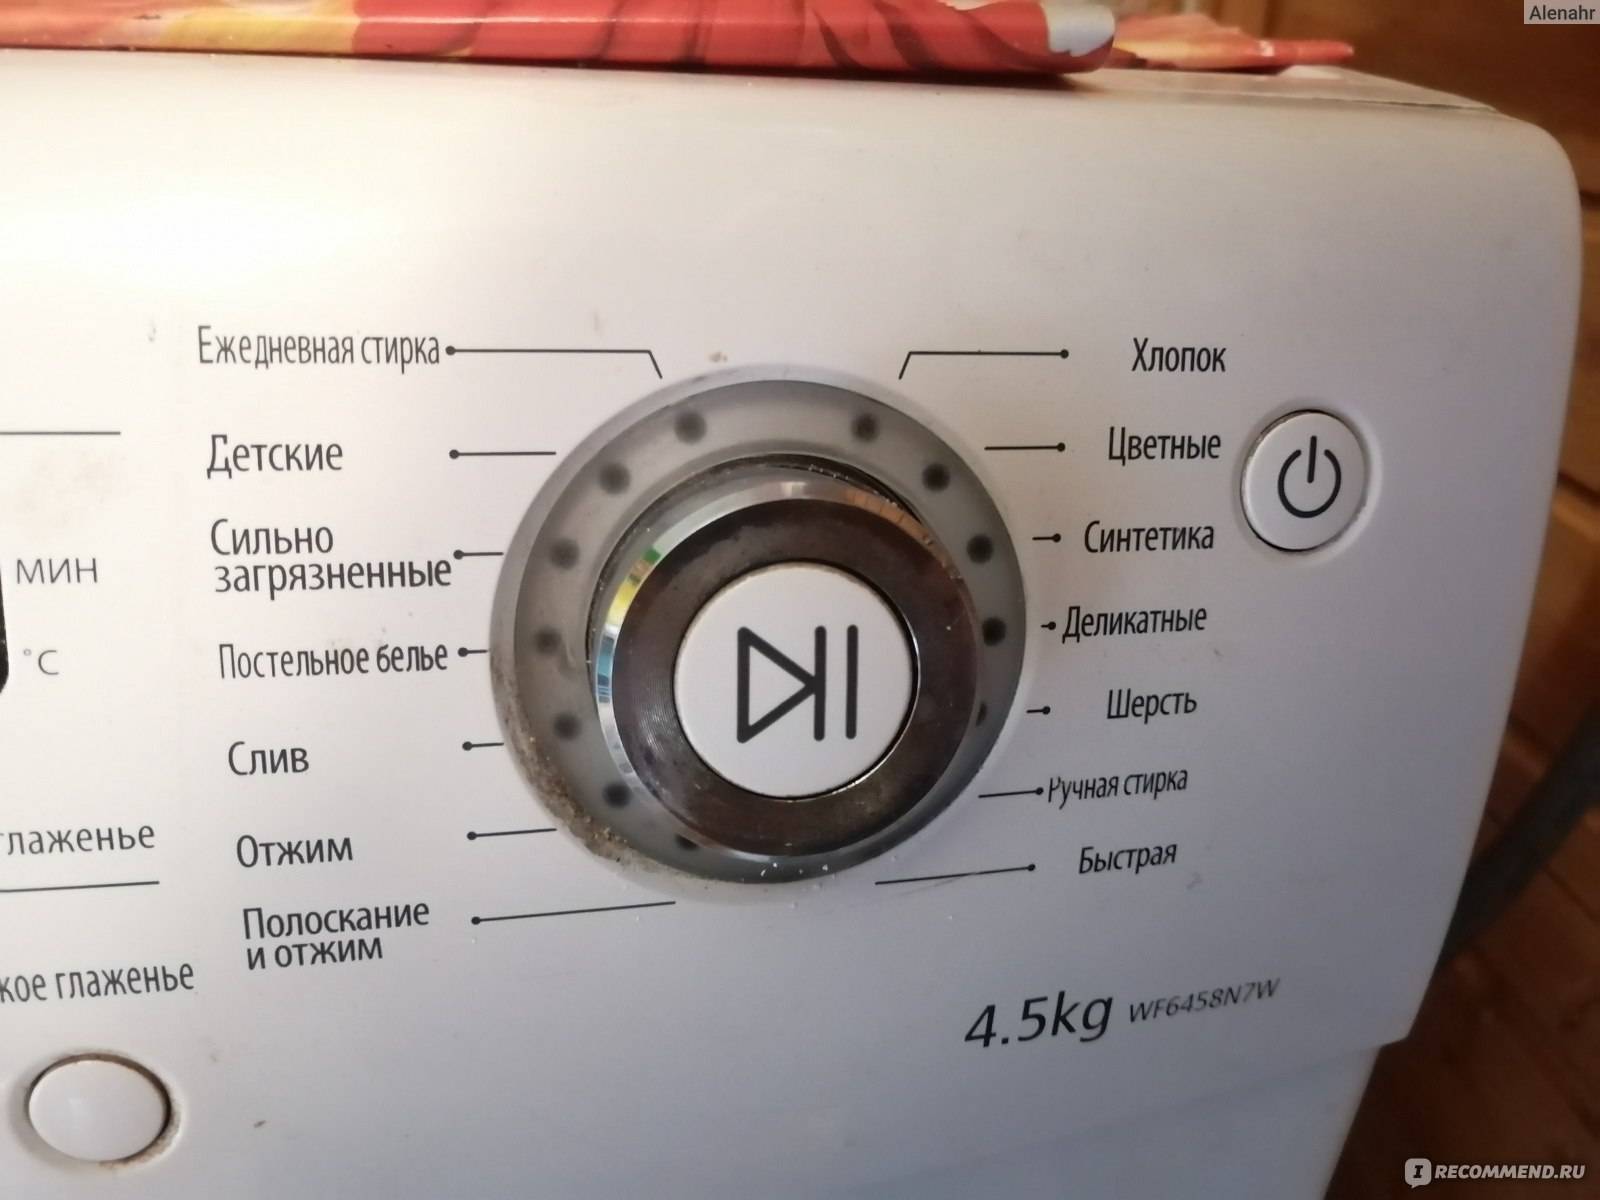 Samsung s852: инструкция и руководство на русском